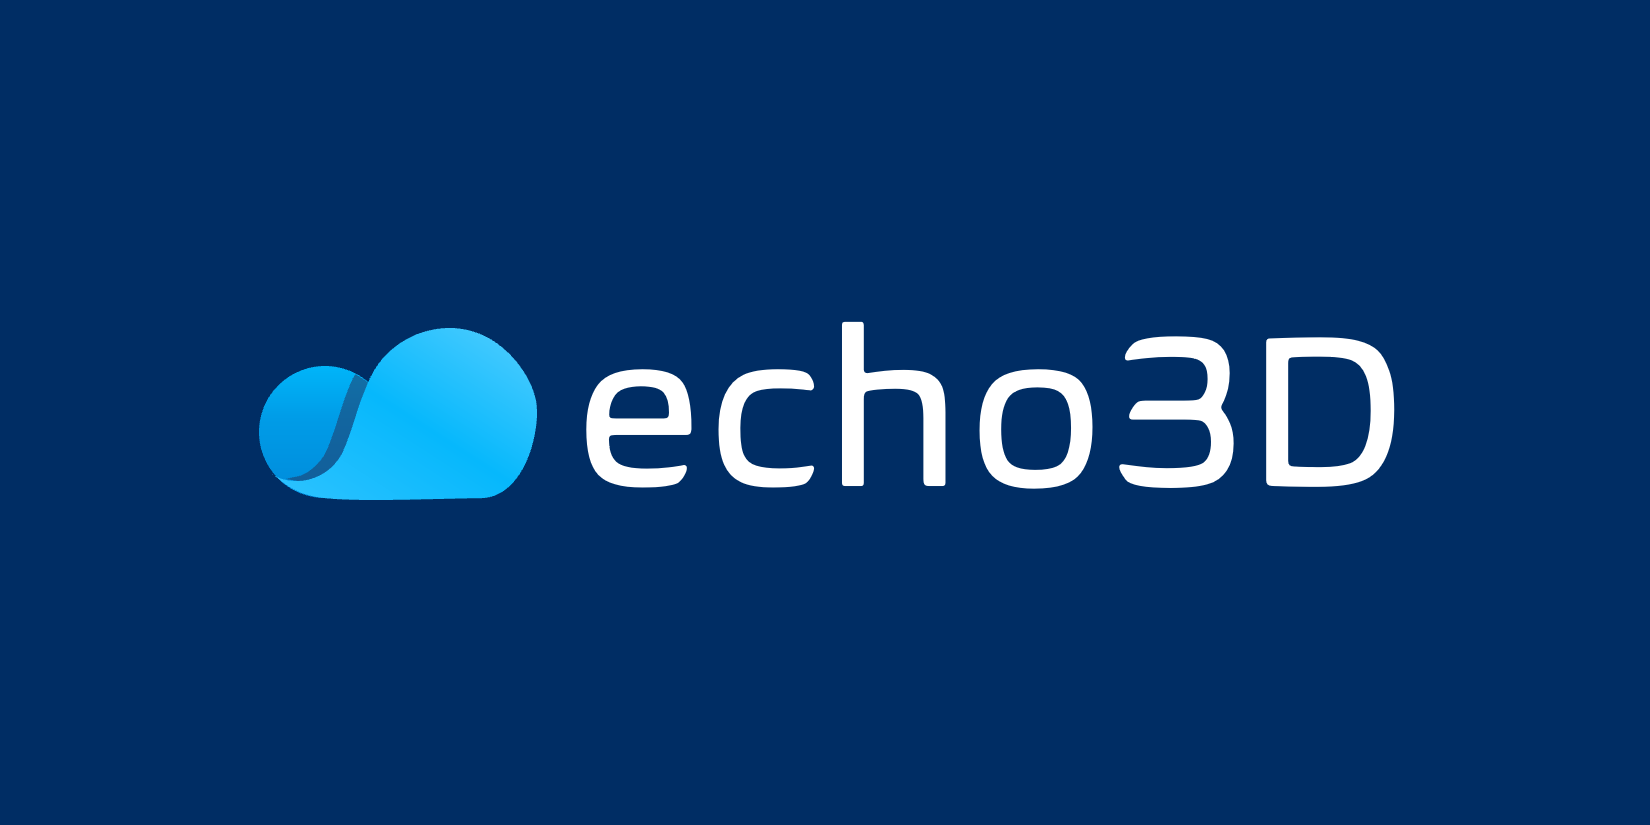 3D、AR/VR内容云创作工具Echo3D宣布完成550万美元融资